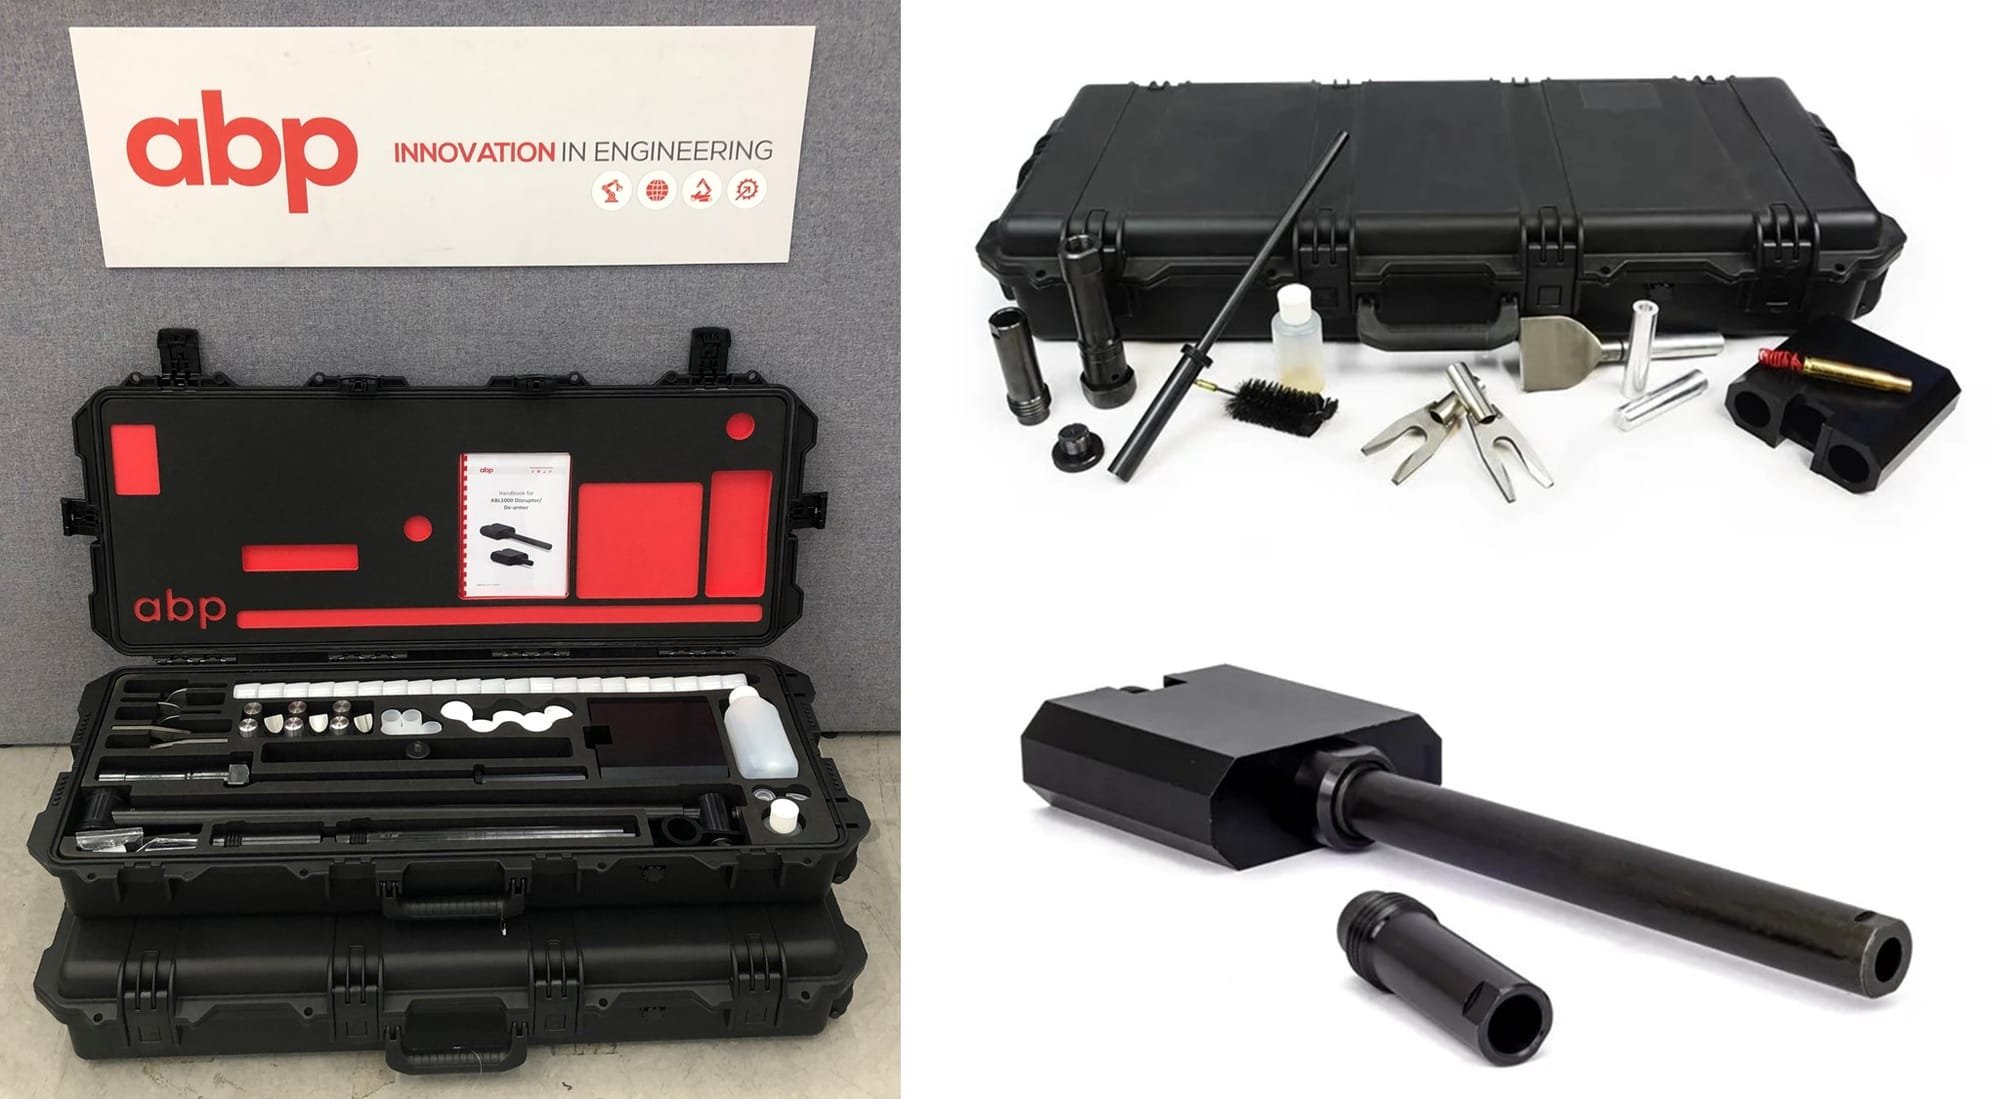 ABL1000 disruptor/de-armer kits